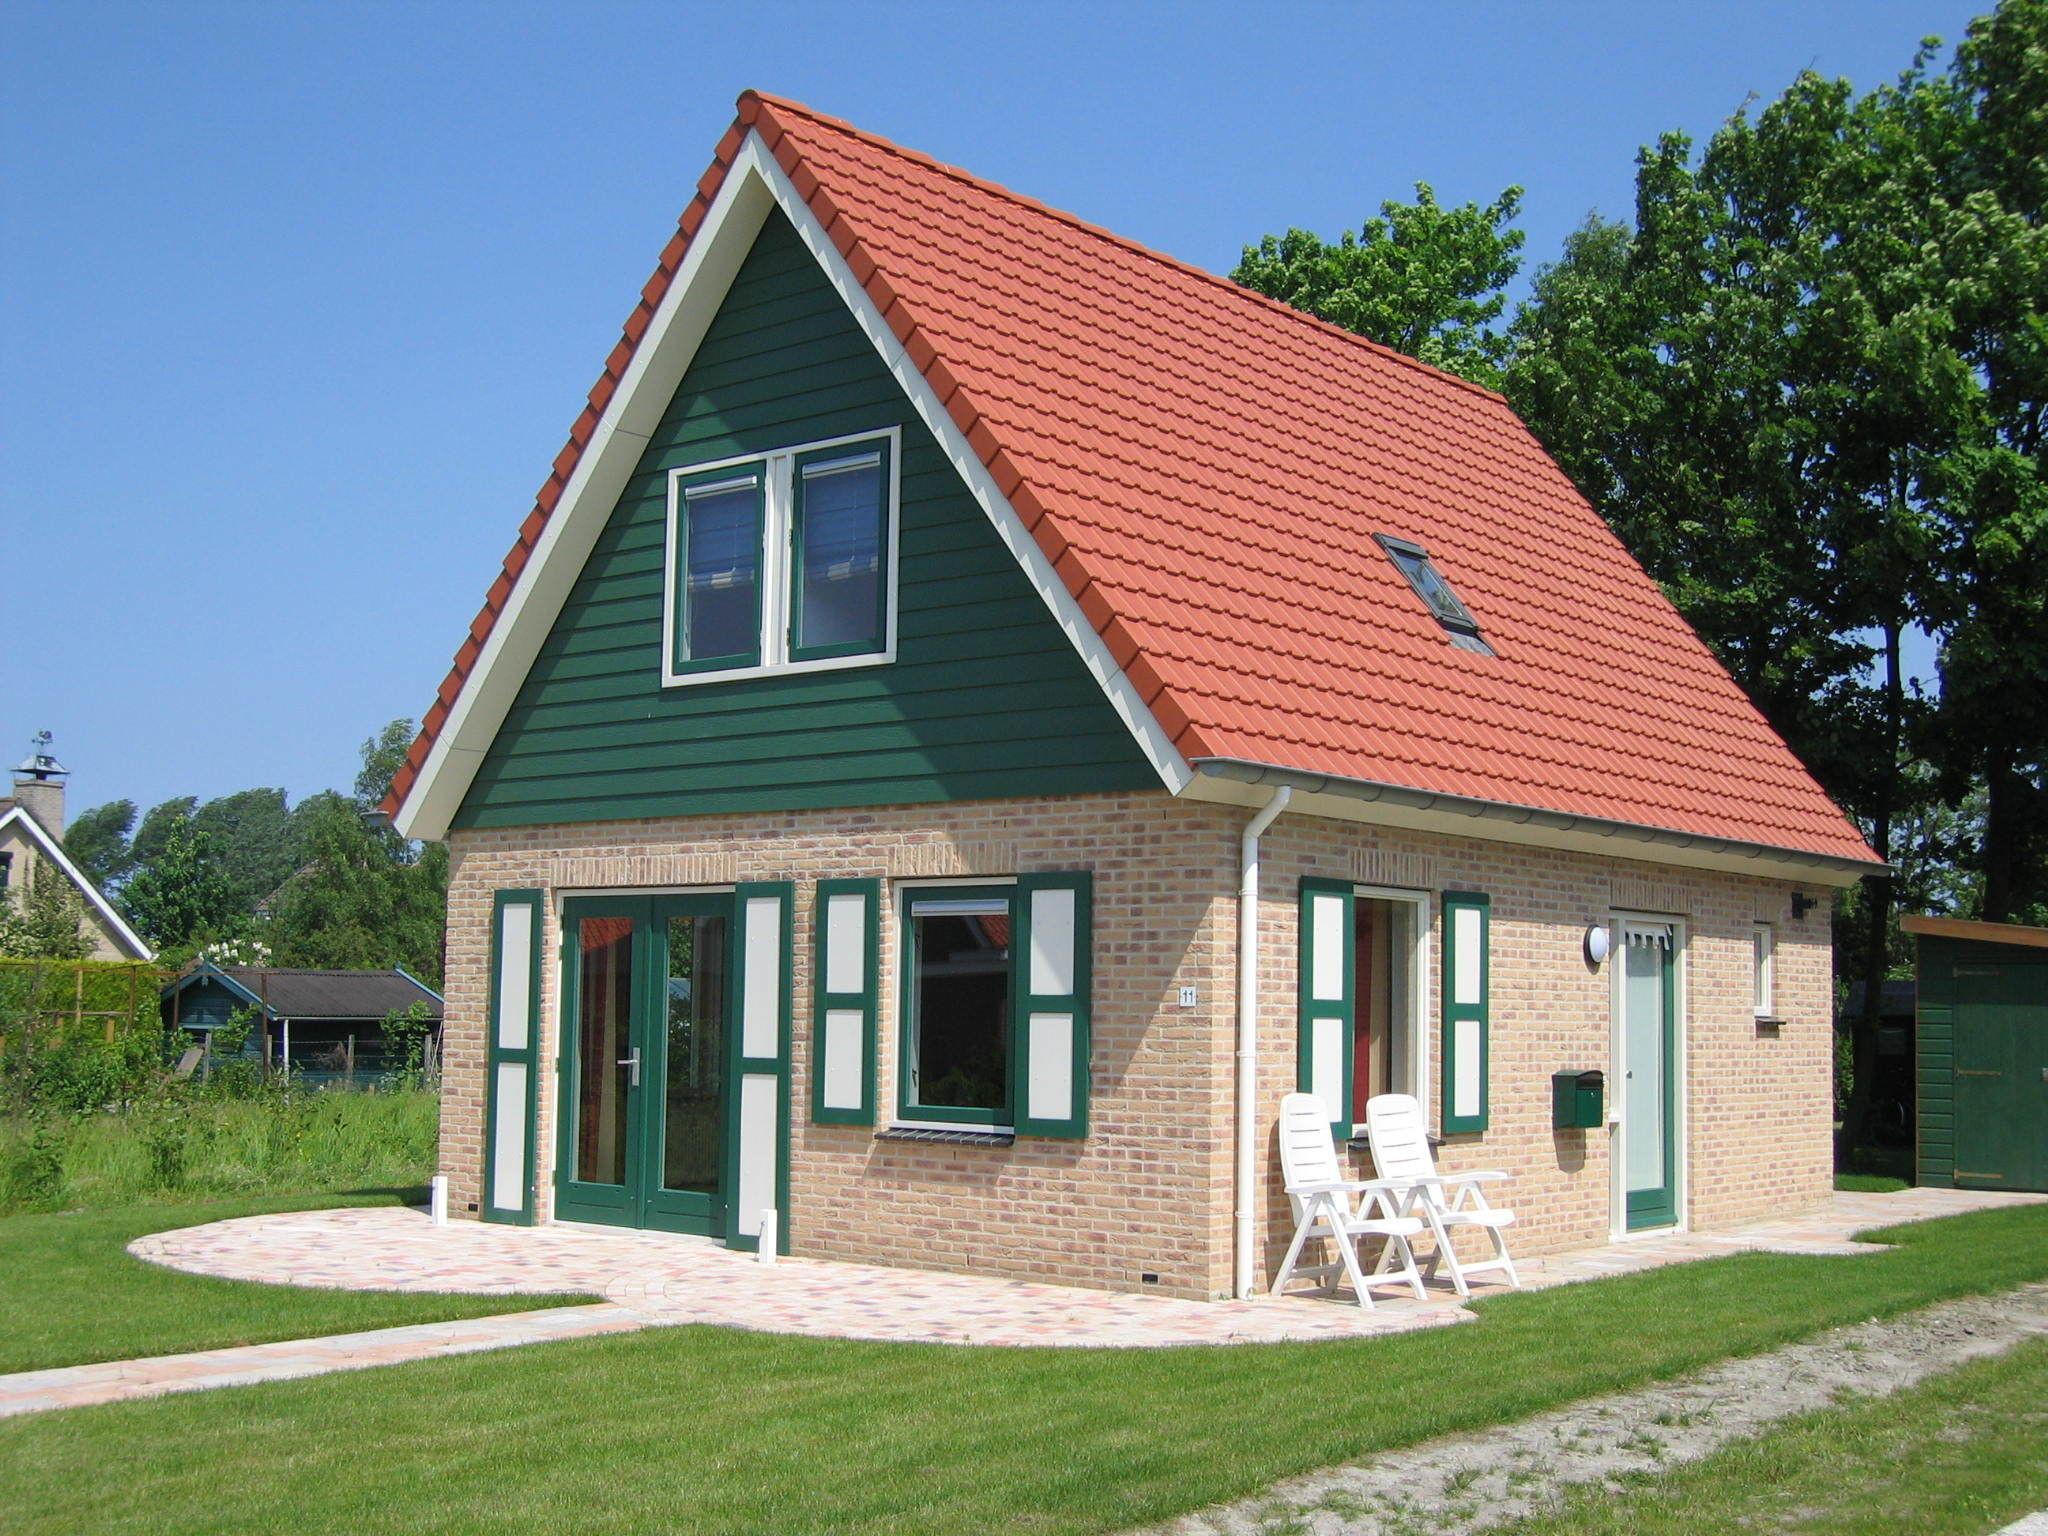 Ferienhaus in Zonnemaire in der Nähe des Sees